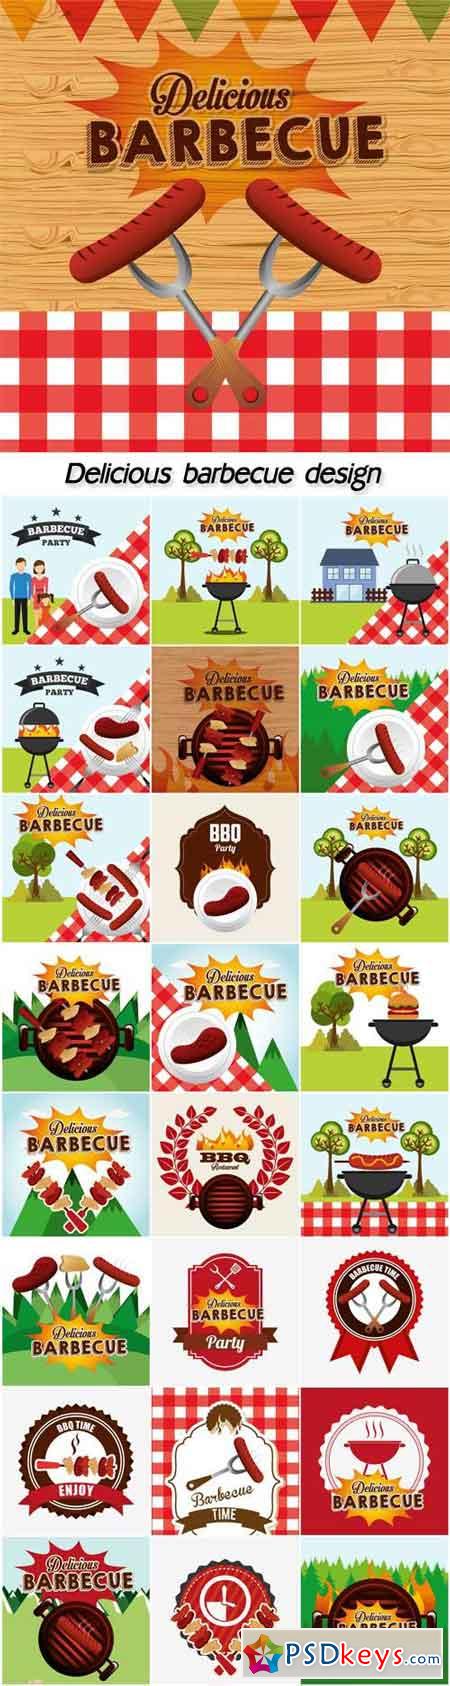 Delicious barbecue design